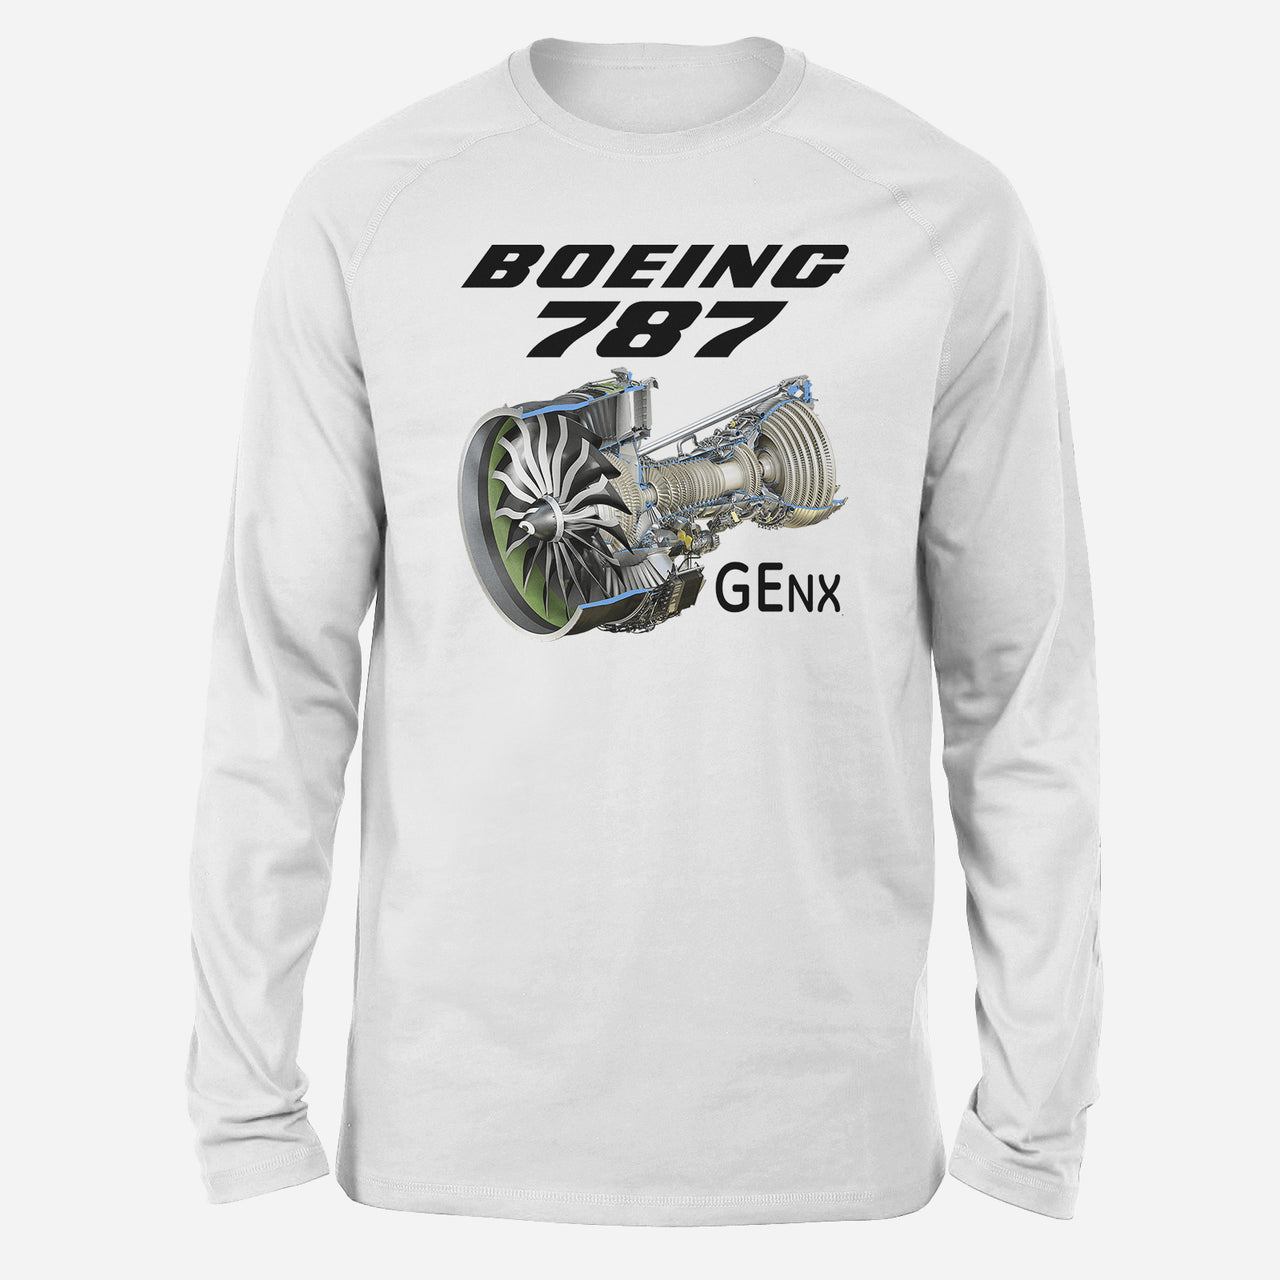 Boeing 787 & GENX Engine Designed Long-Sleeve T-Shirts